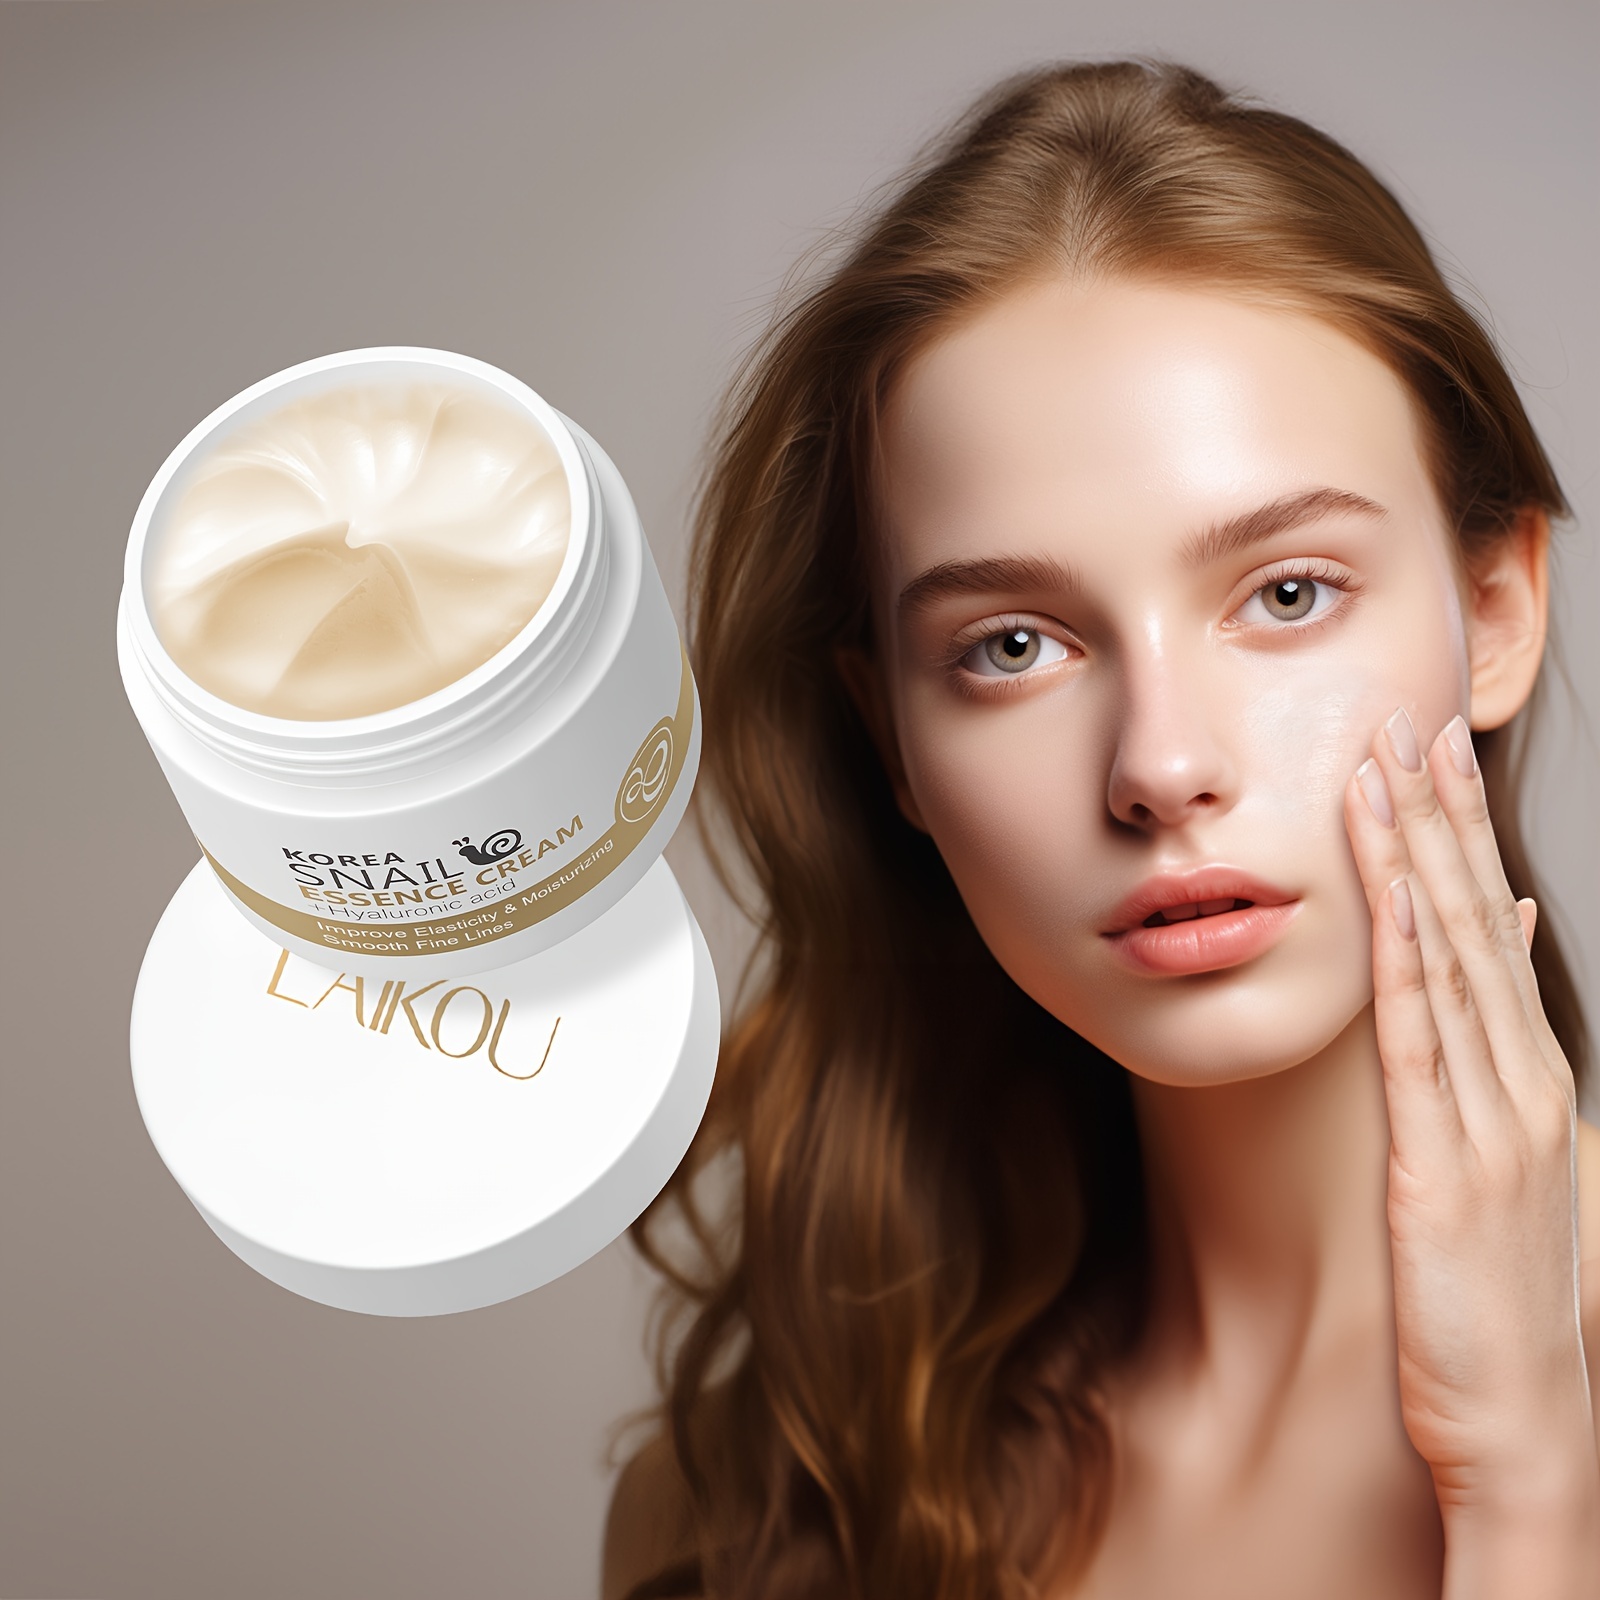 

1pc Laikou Snail Skin Rejuvenation Facial Cream 25g/0.88oz., Smooth Fine Lines Moisturizer, Hydrating Facial Cream